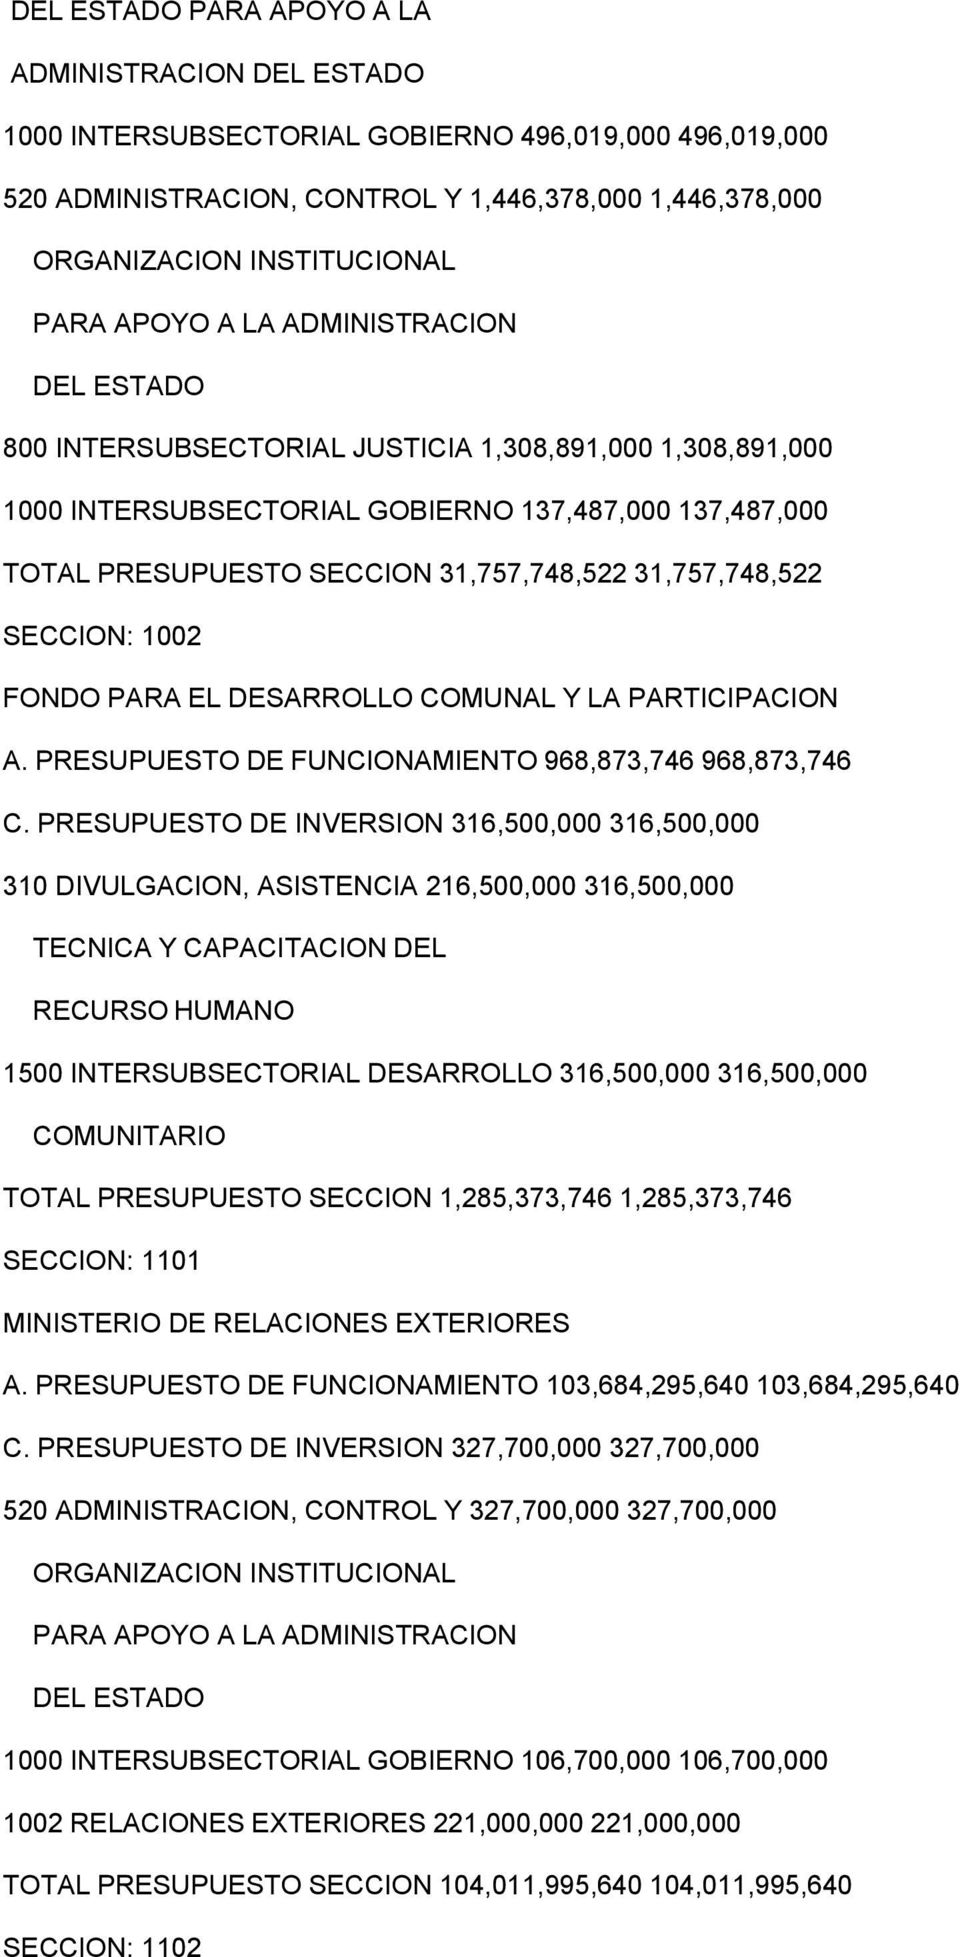 1002 FONDO PARA EL DESARROLLO COMUNAL Y LA PARTICIPACION A. PRESUPUESTO DE FUNCIONAMIENTO 968,873,746 968,873,746 C.